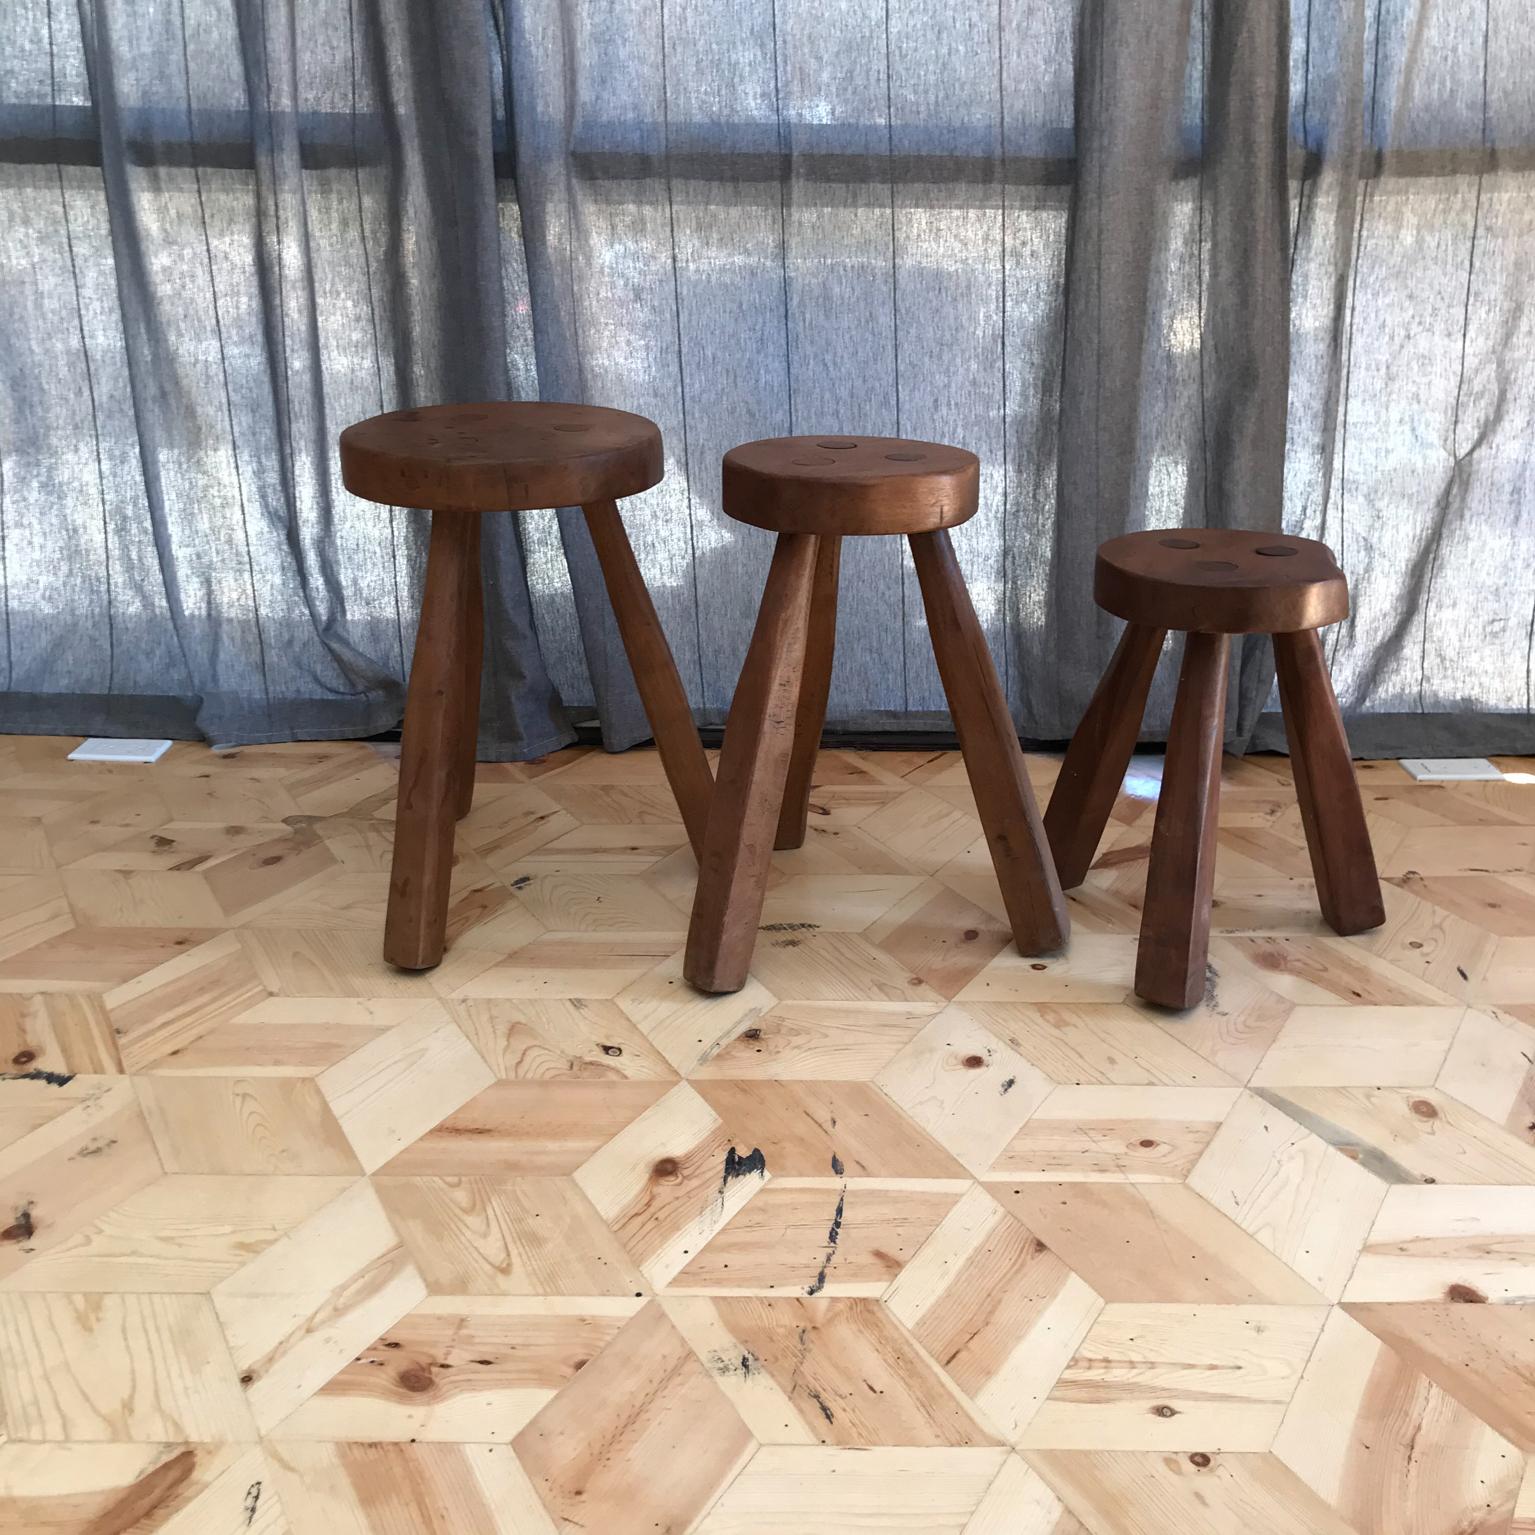 3 legged wood stool